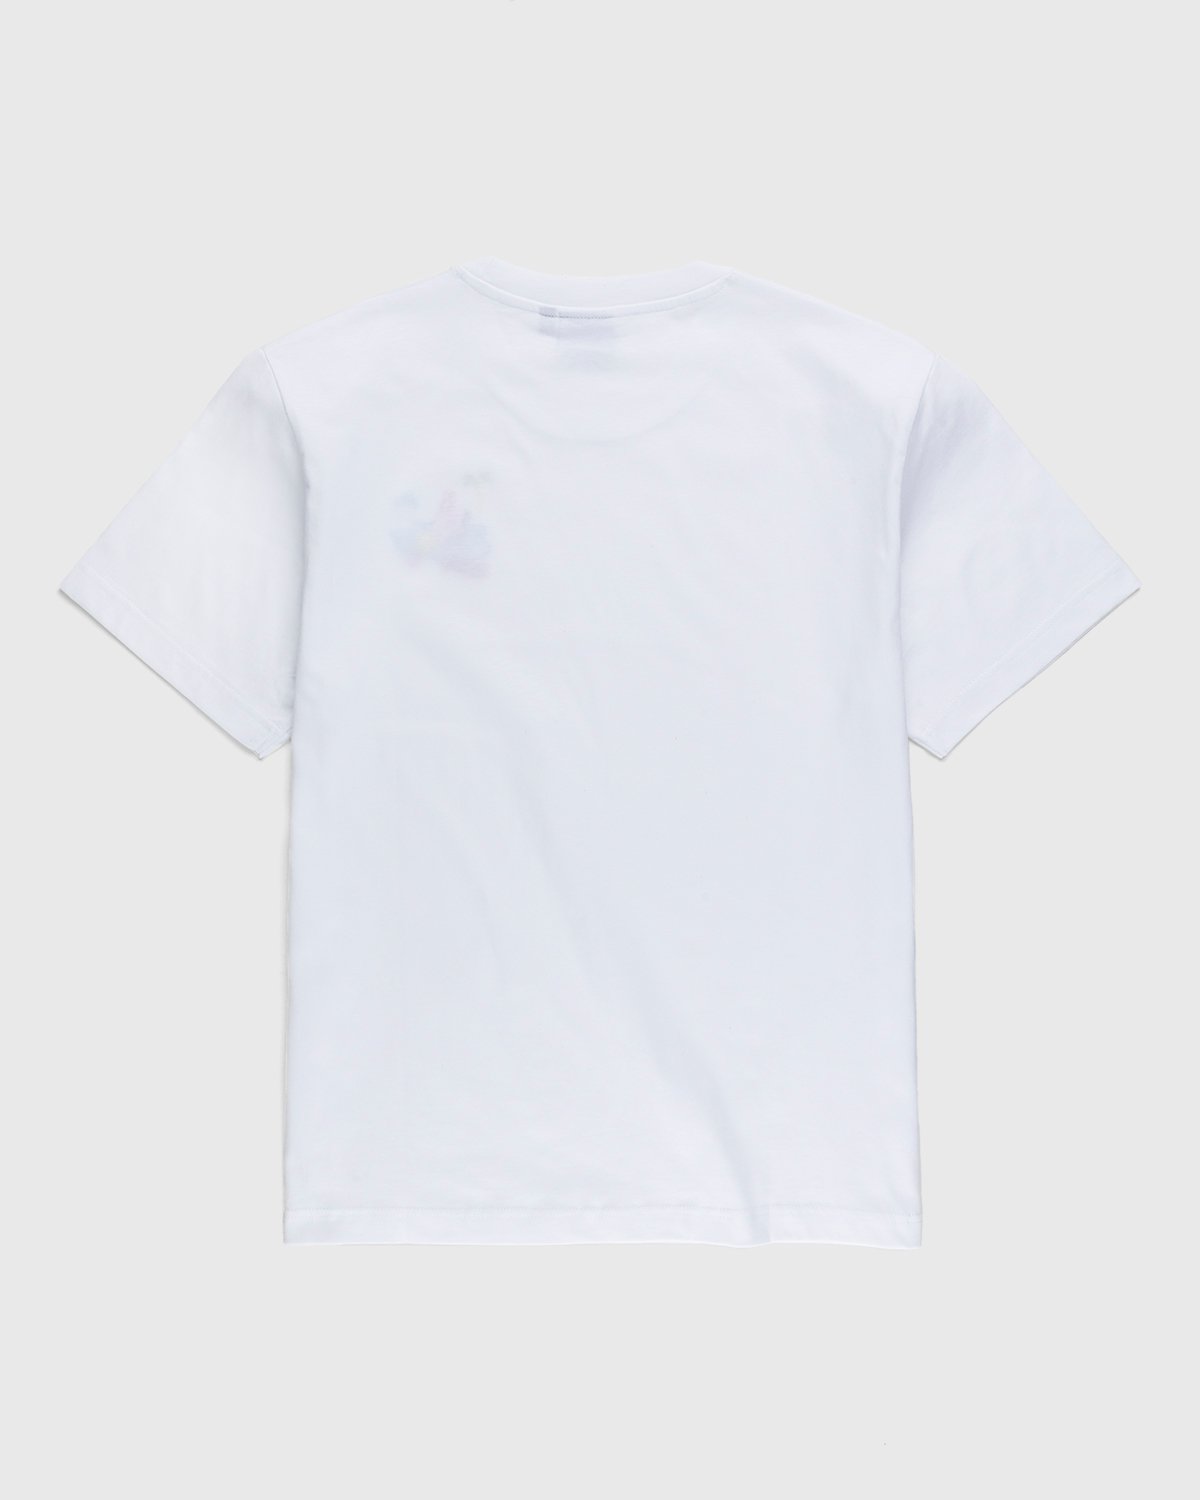 Carne Bollente - Baise sur la Plage T-Shirt White - Clothing - White - Image 2